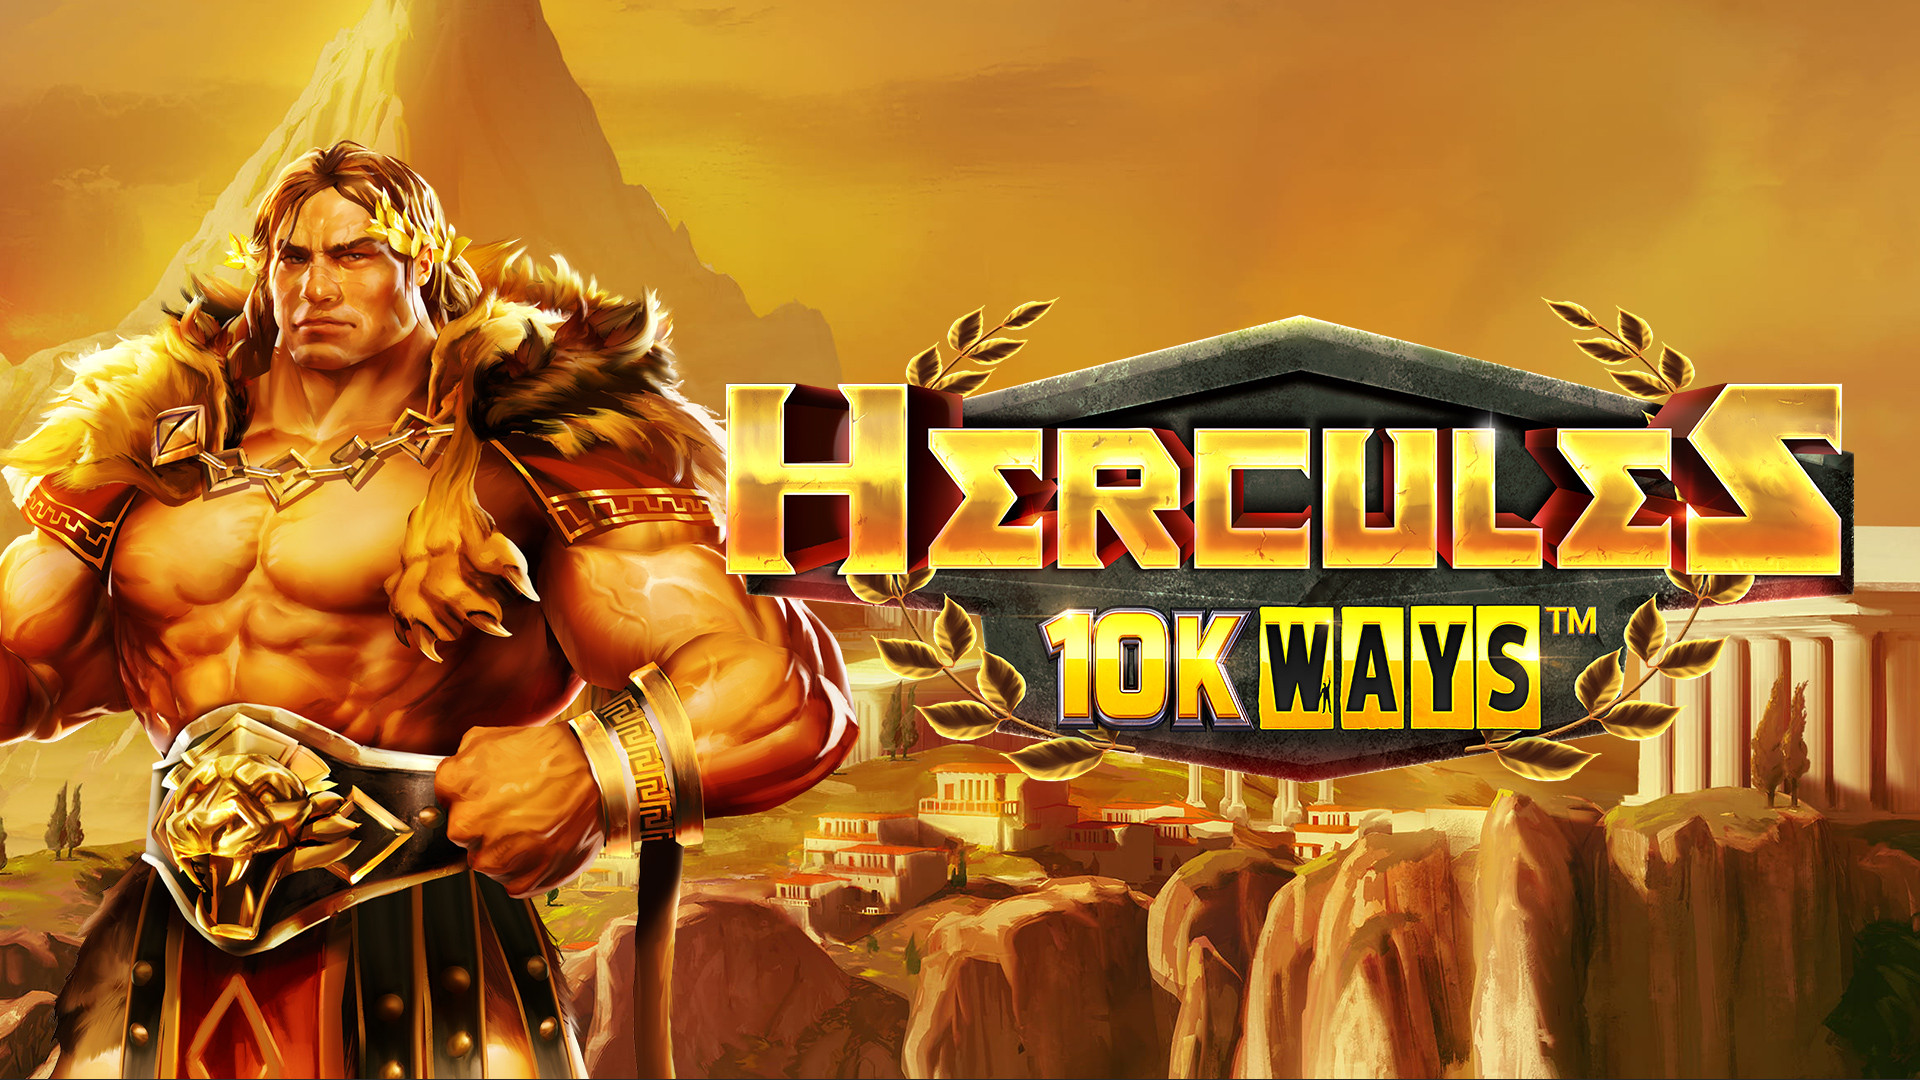 Hercules 10k Ways